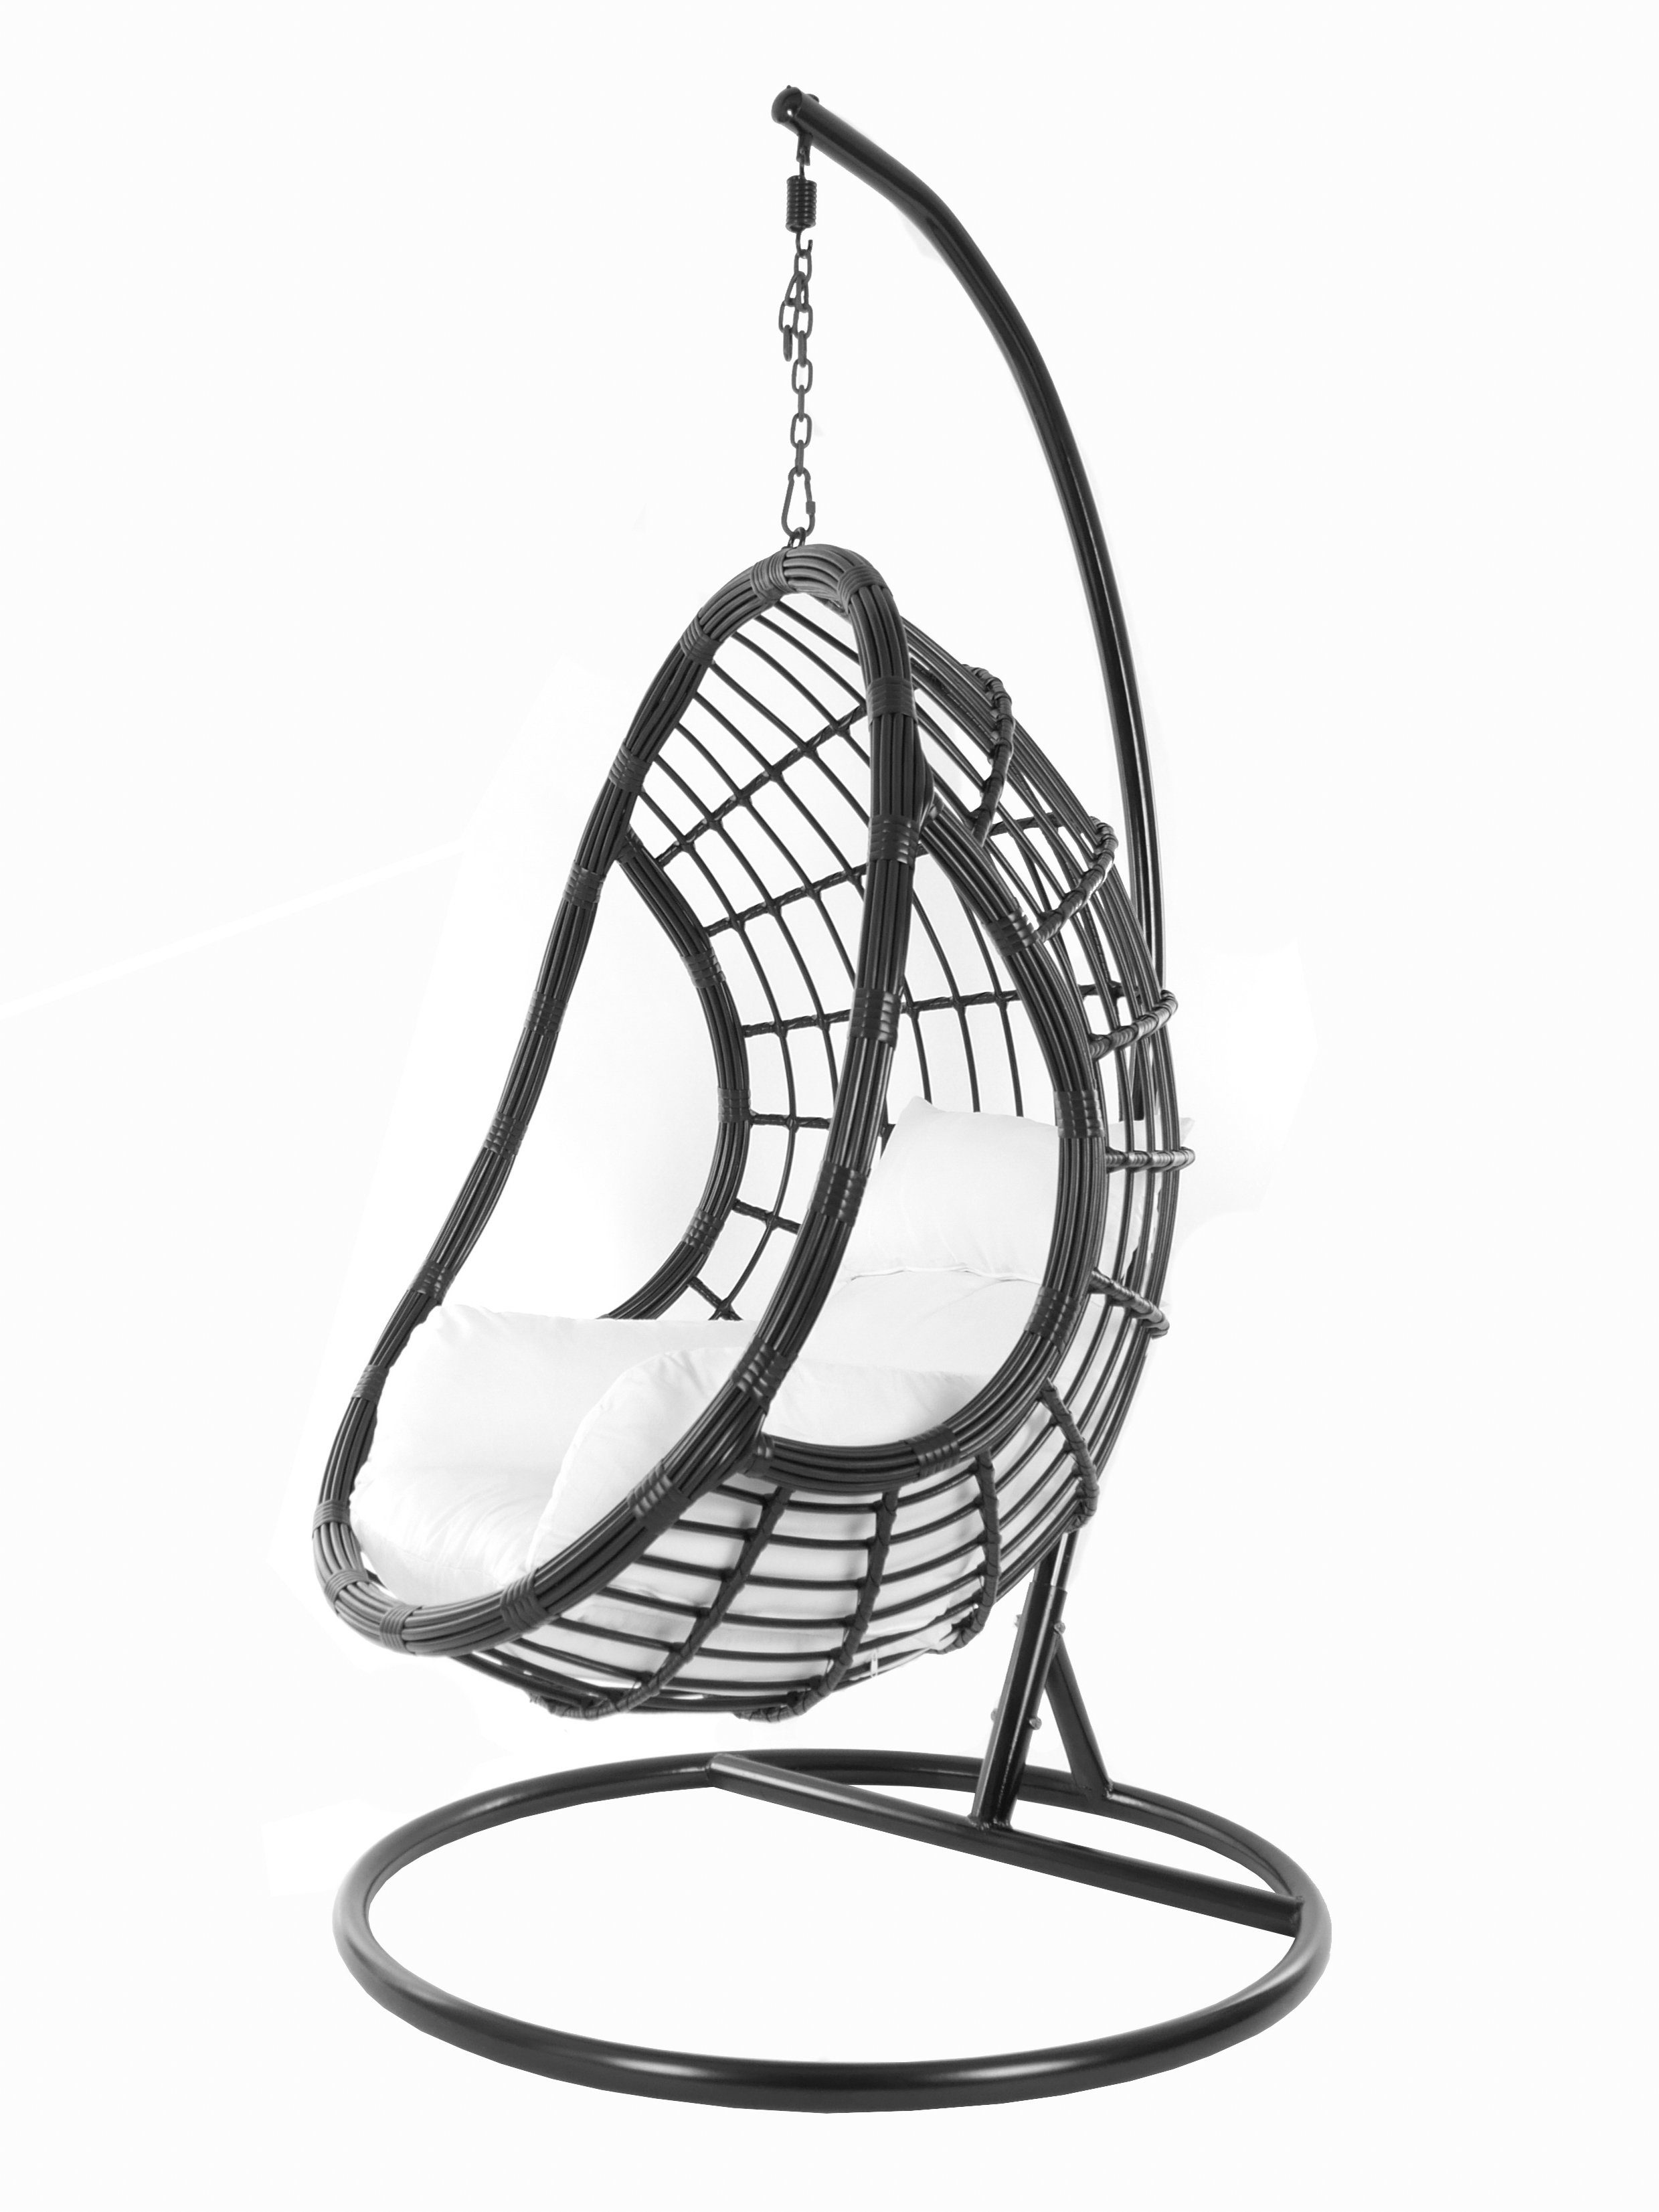 KIDEO Hängesessel PALMANOVA black, Schwebesessel, Swing Chair, Hängesessel mit Gestell und Kissen, Nest-Kissen weiß (1000 snow)